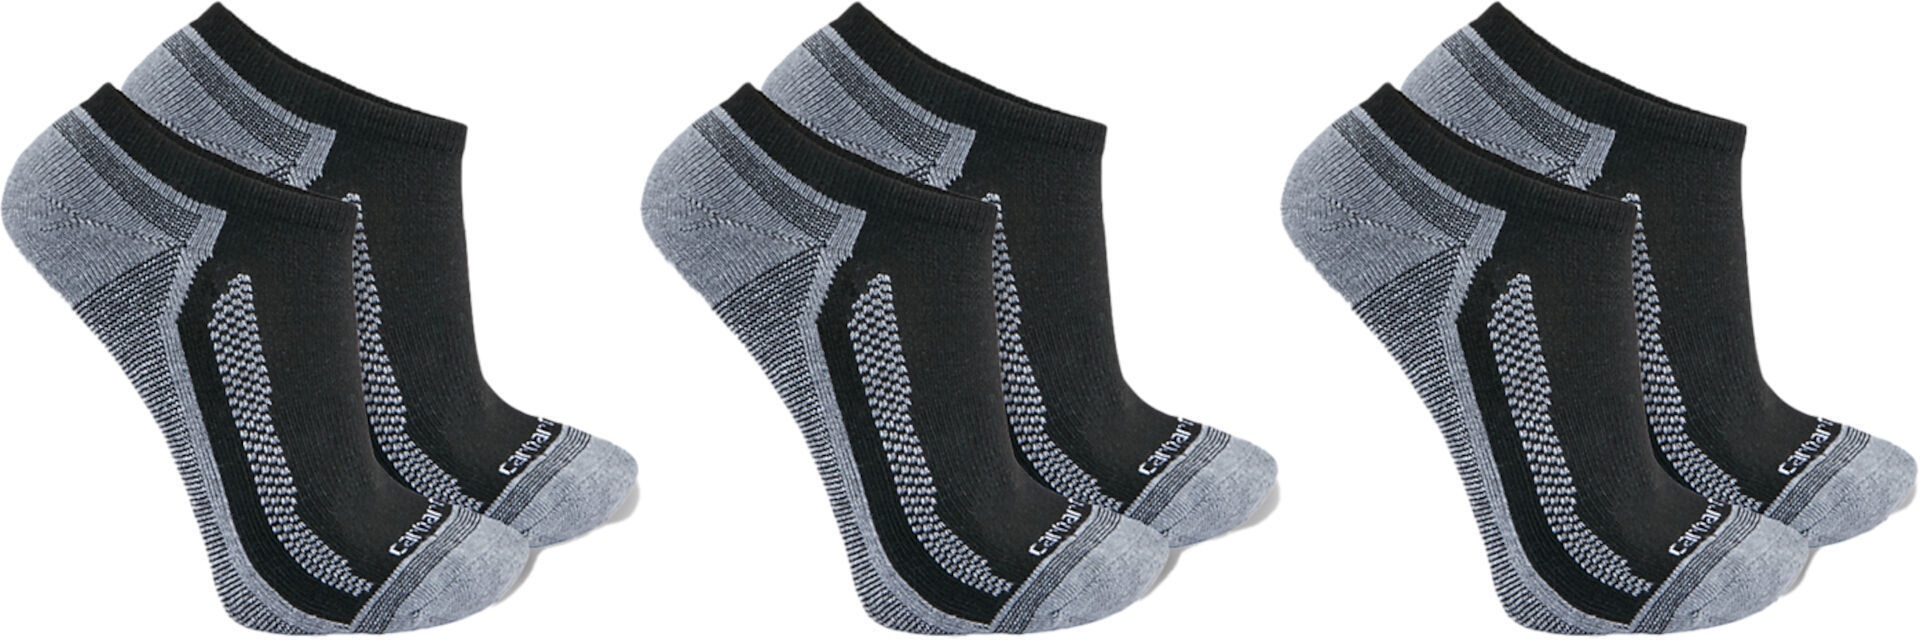 Carhartt Force Midweight Low Cut Sokken (3 paar), zwart-grijs, XL